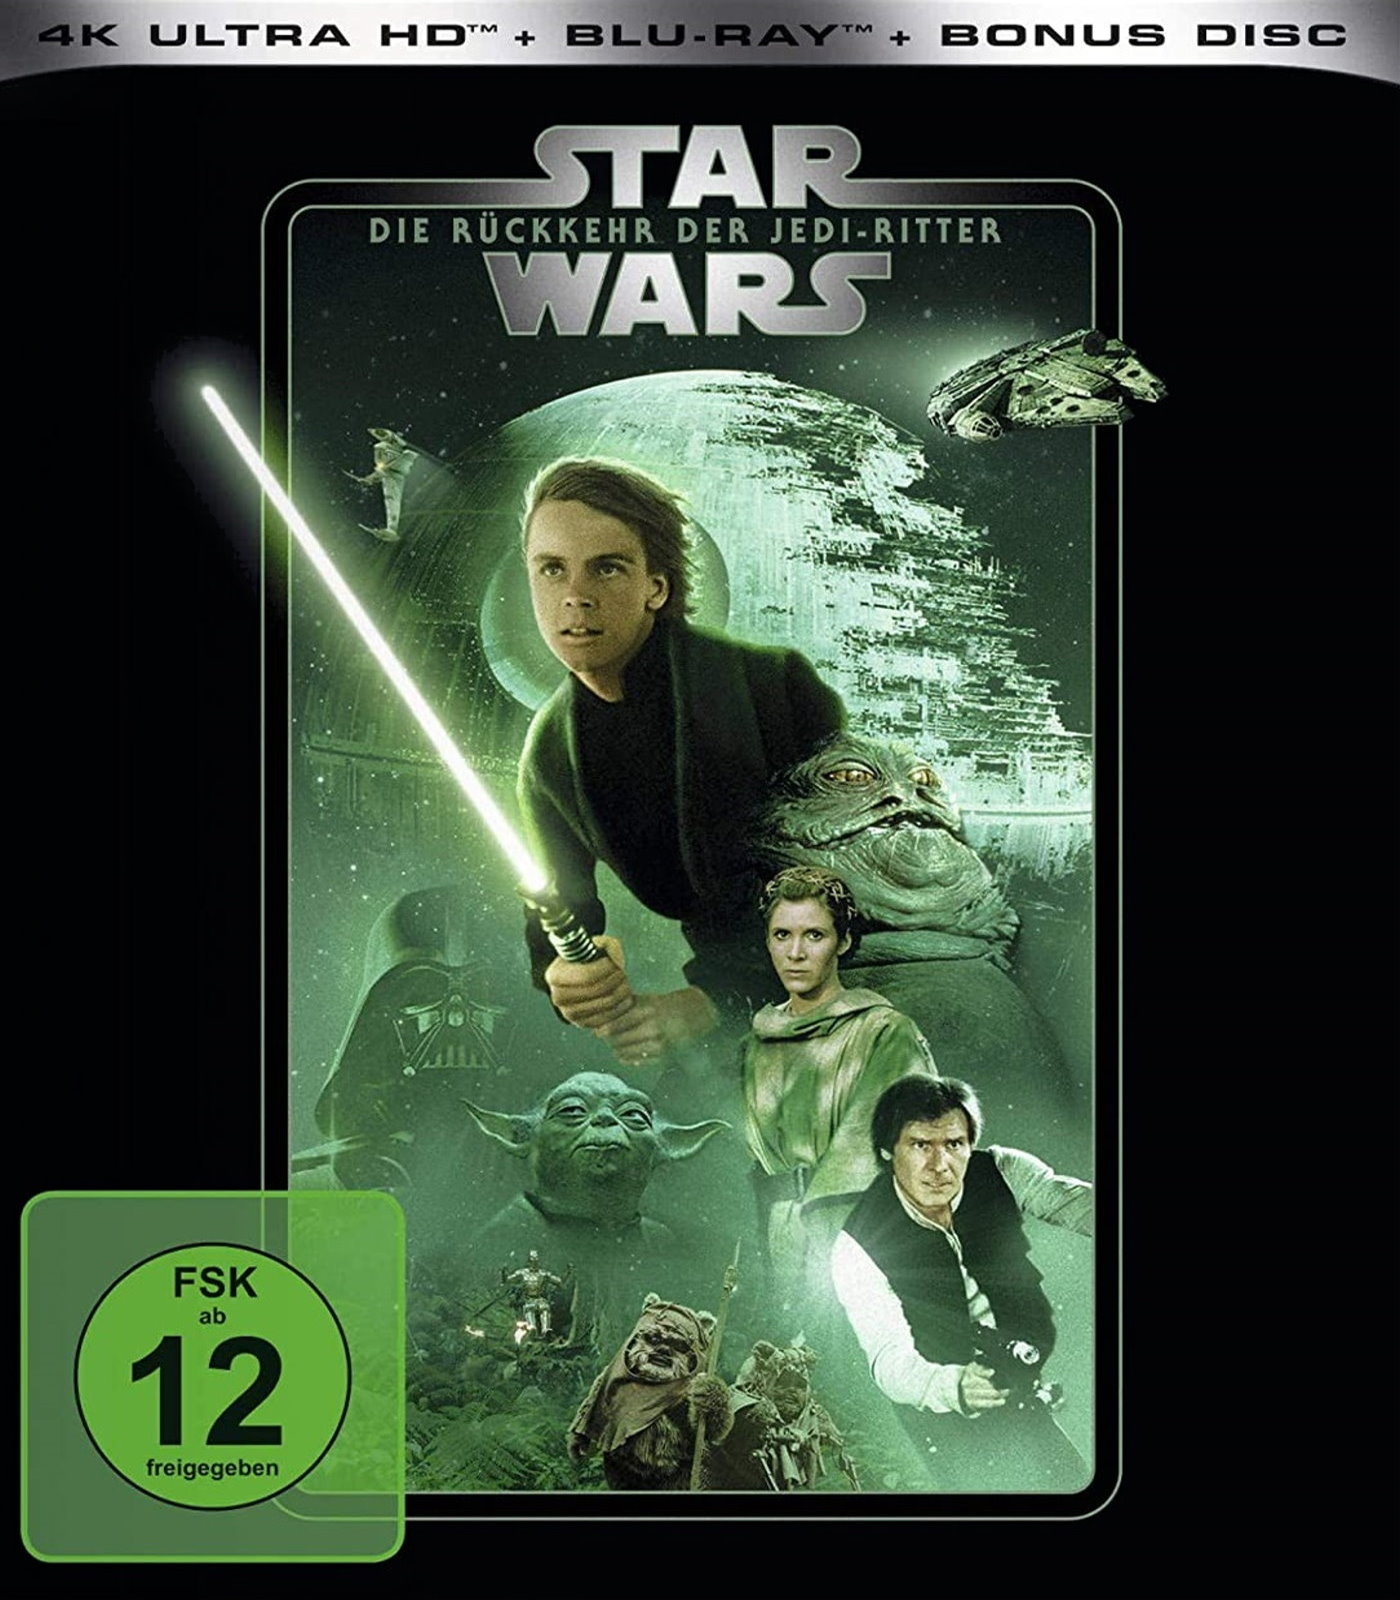 Cover - Star Wars - Die Rückkehr der Jedi-Ritter.jpg